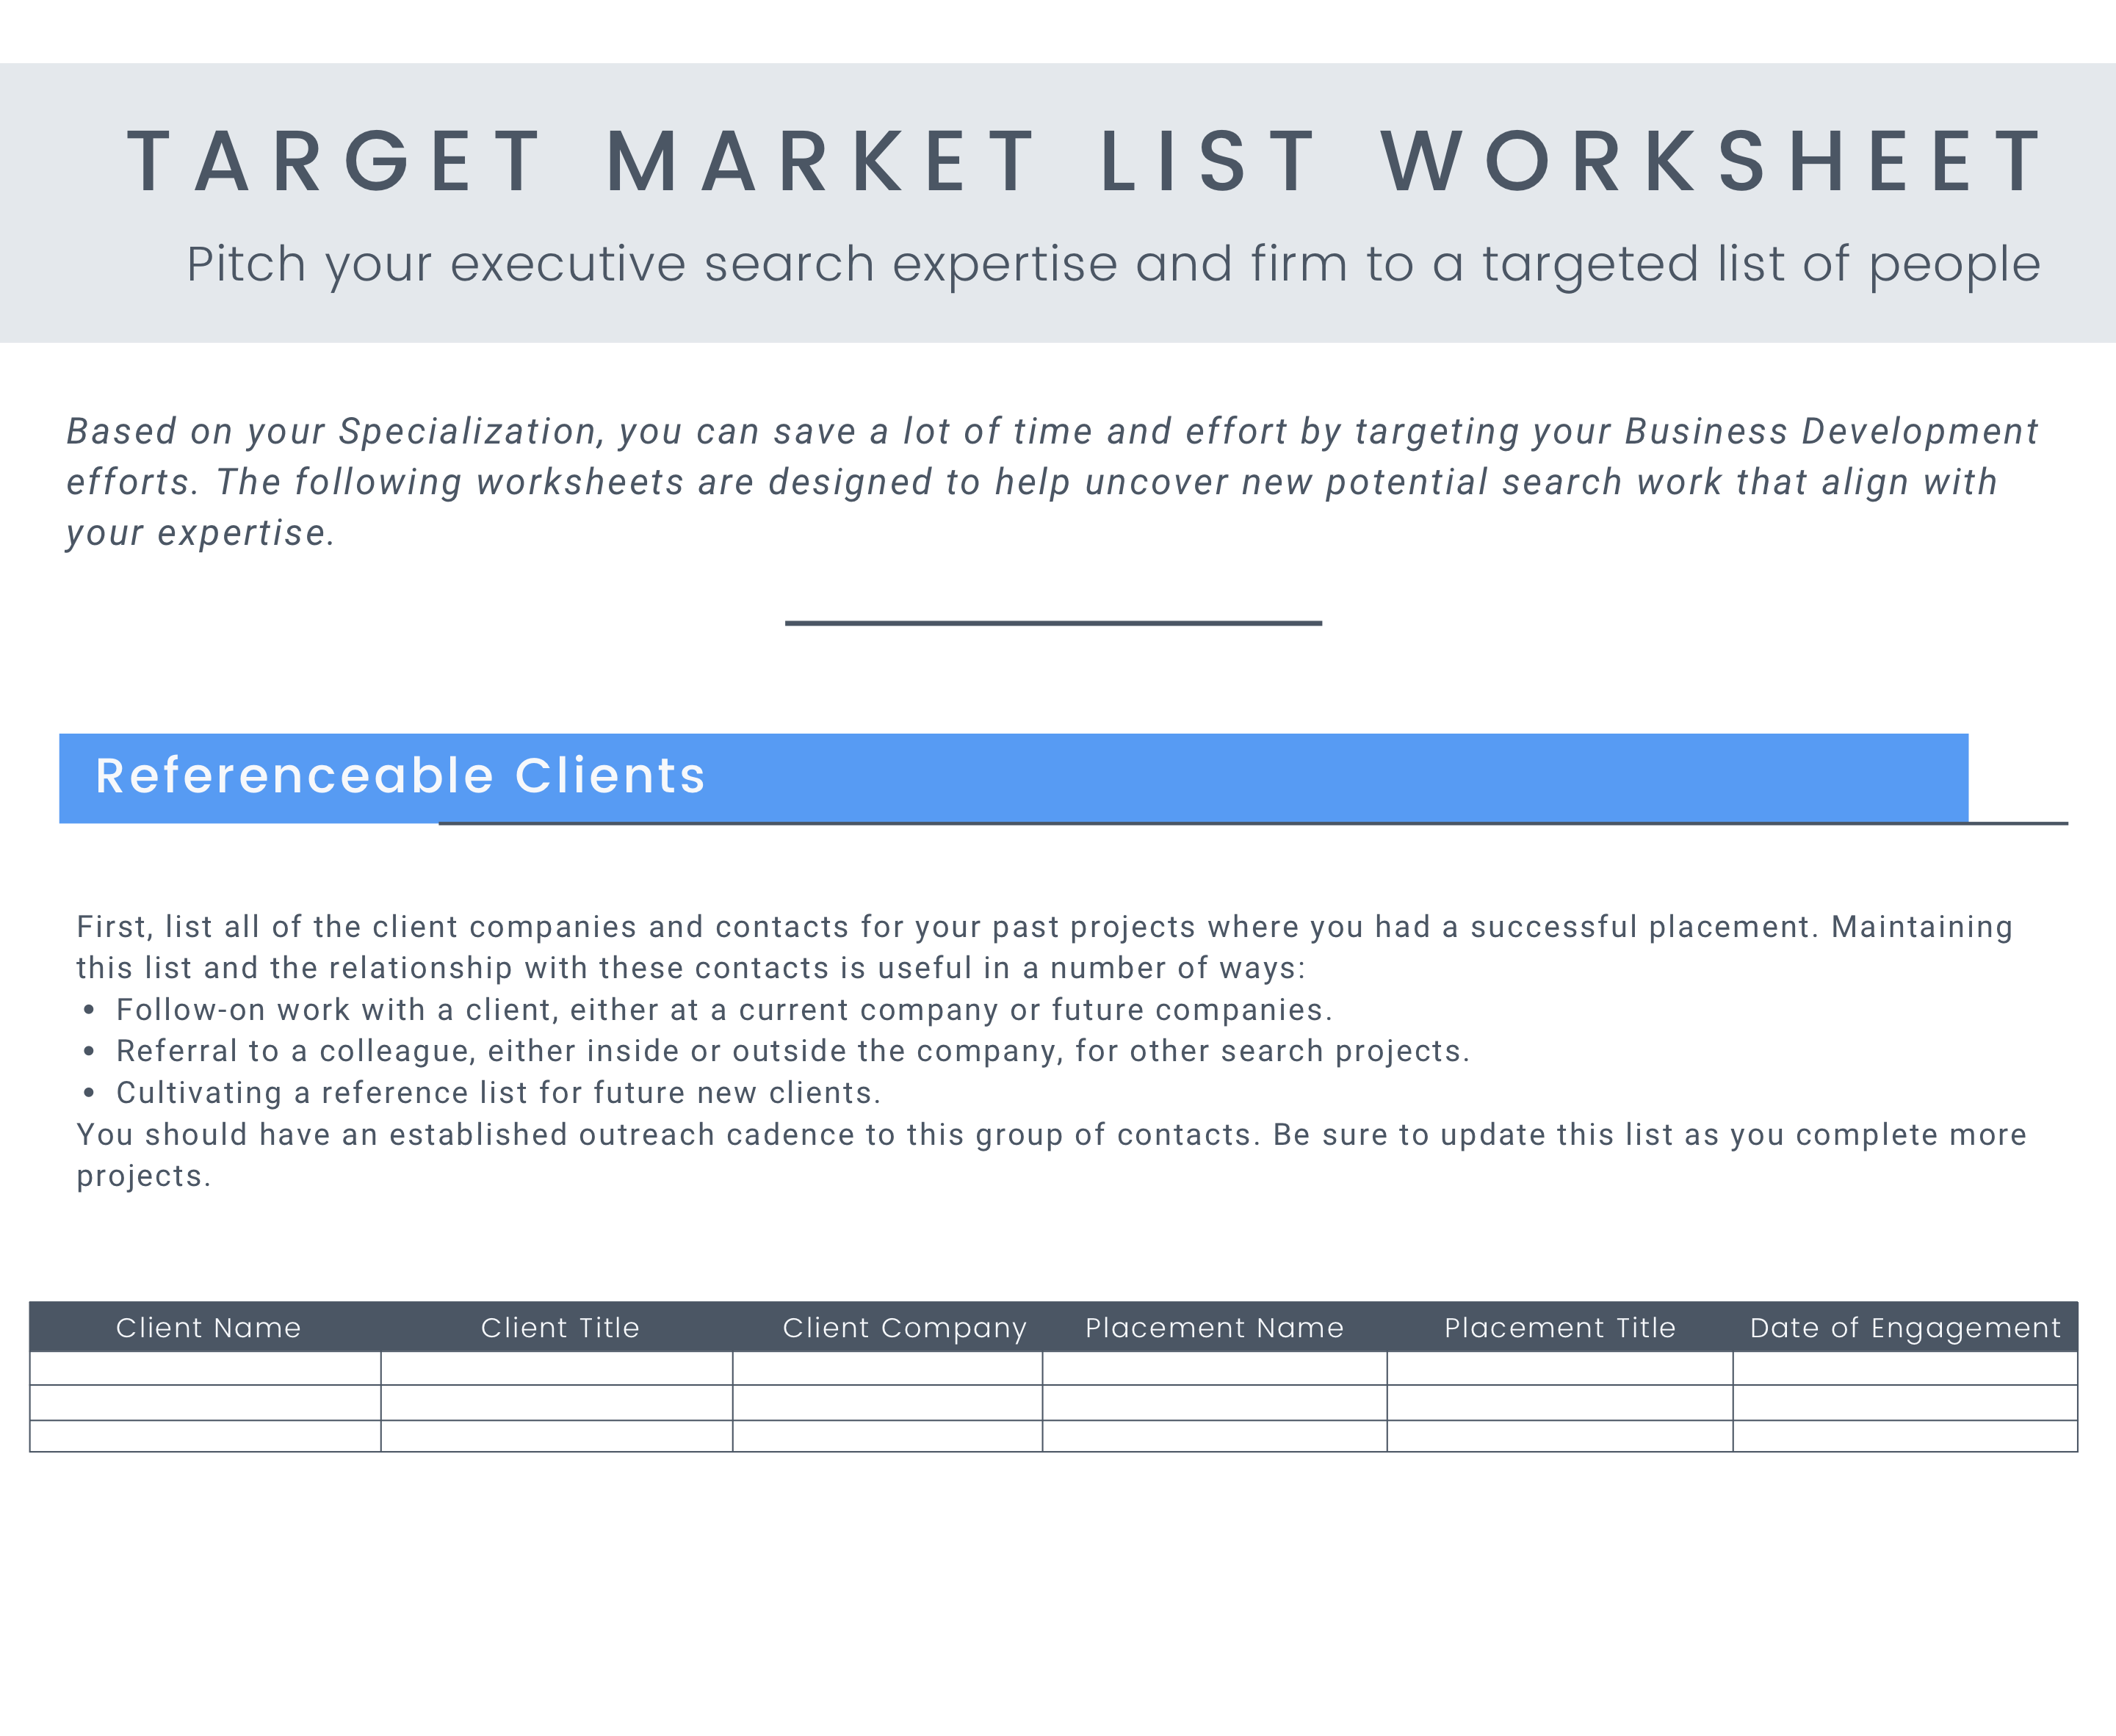 1_Target_Market_List_Worksheet